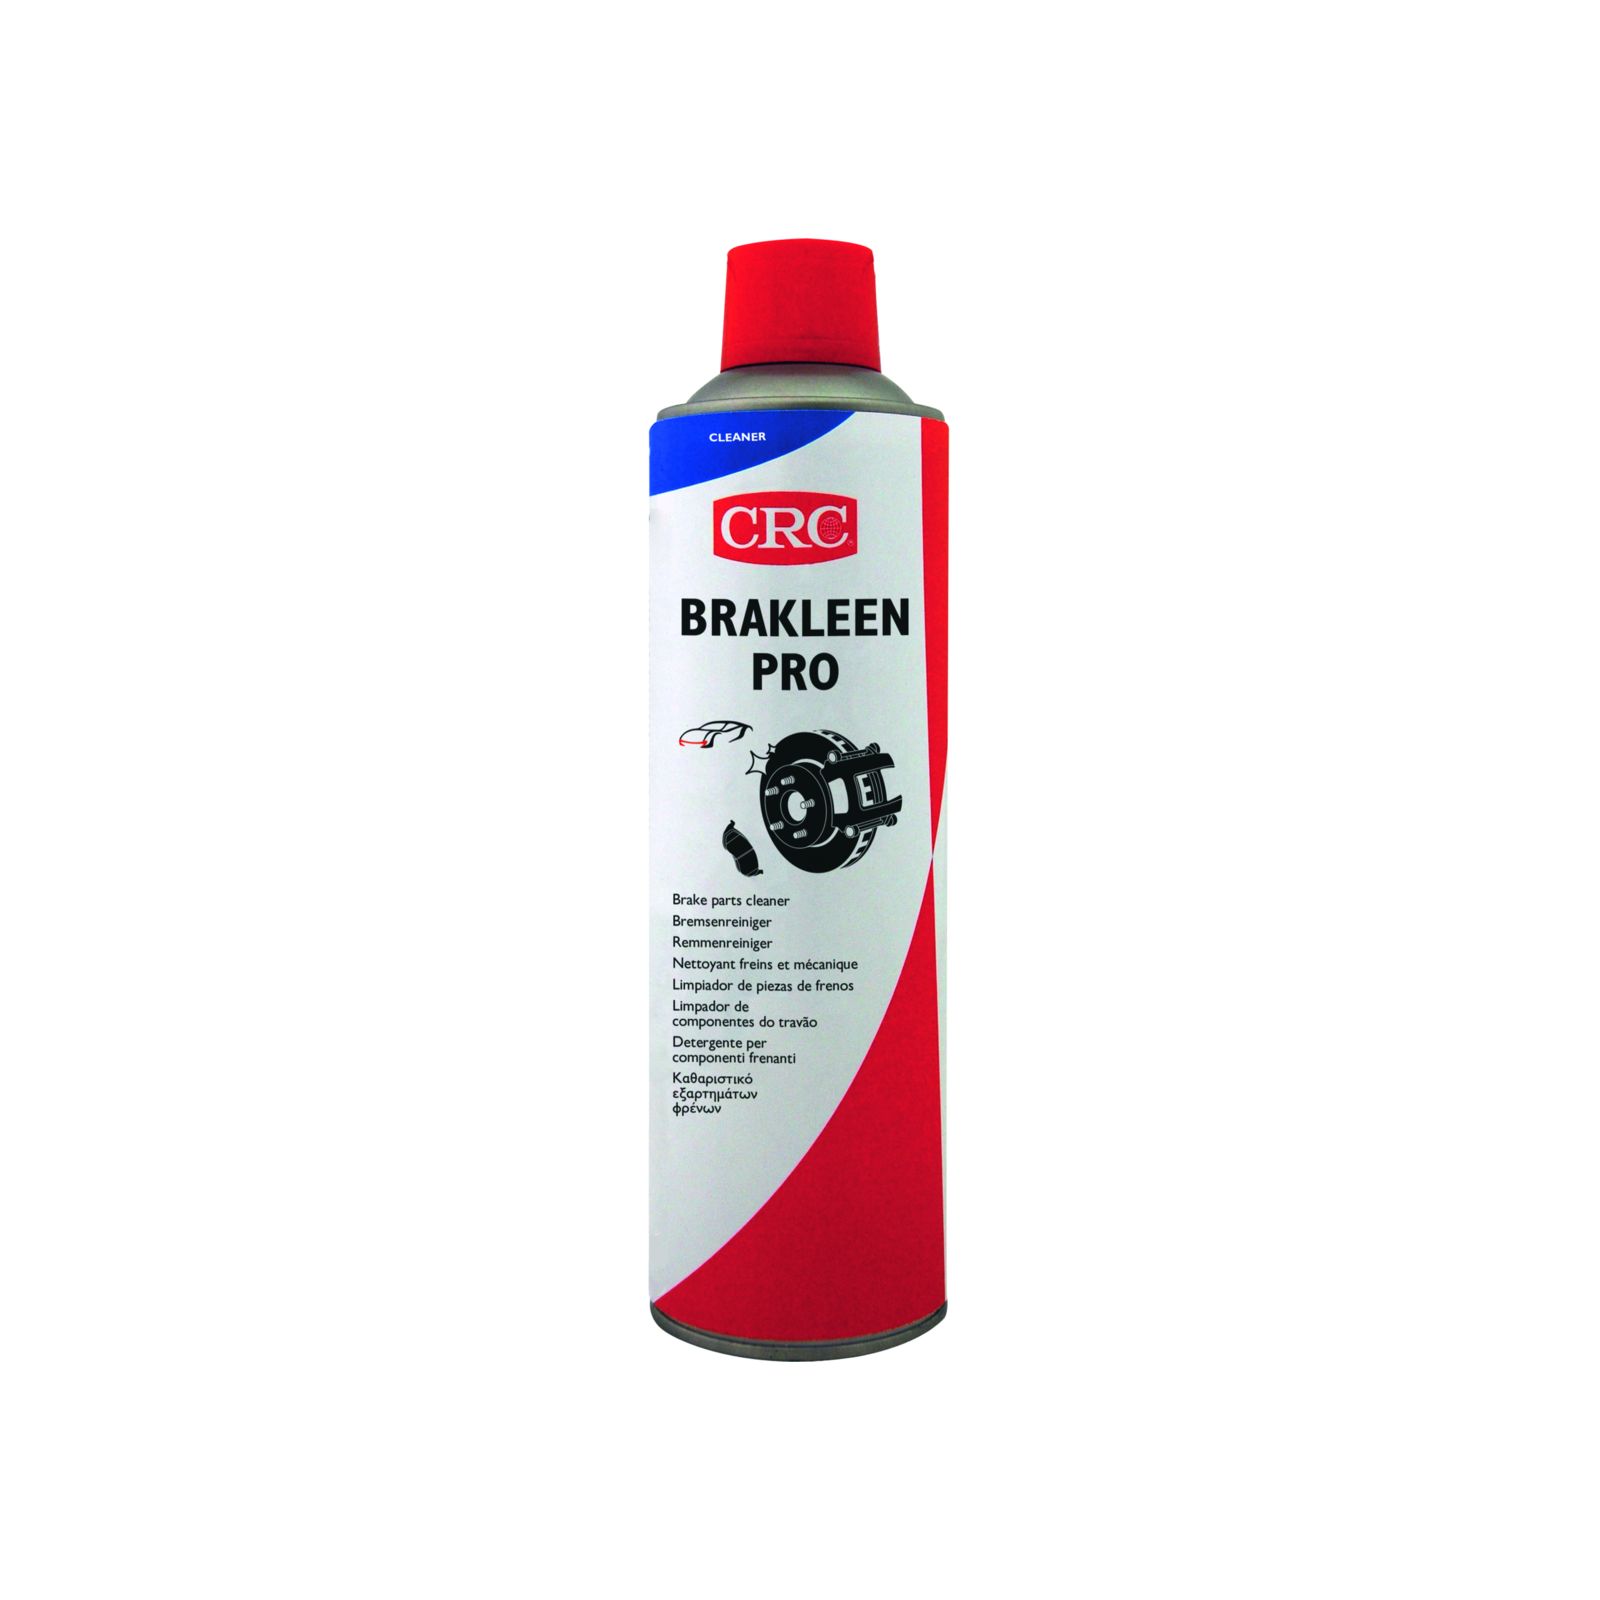 CRC BRAKLEEN PRO Bremsenreiniger, 500 ml - Spraydose